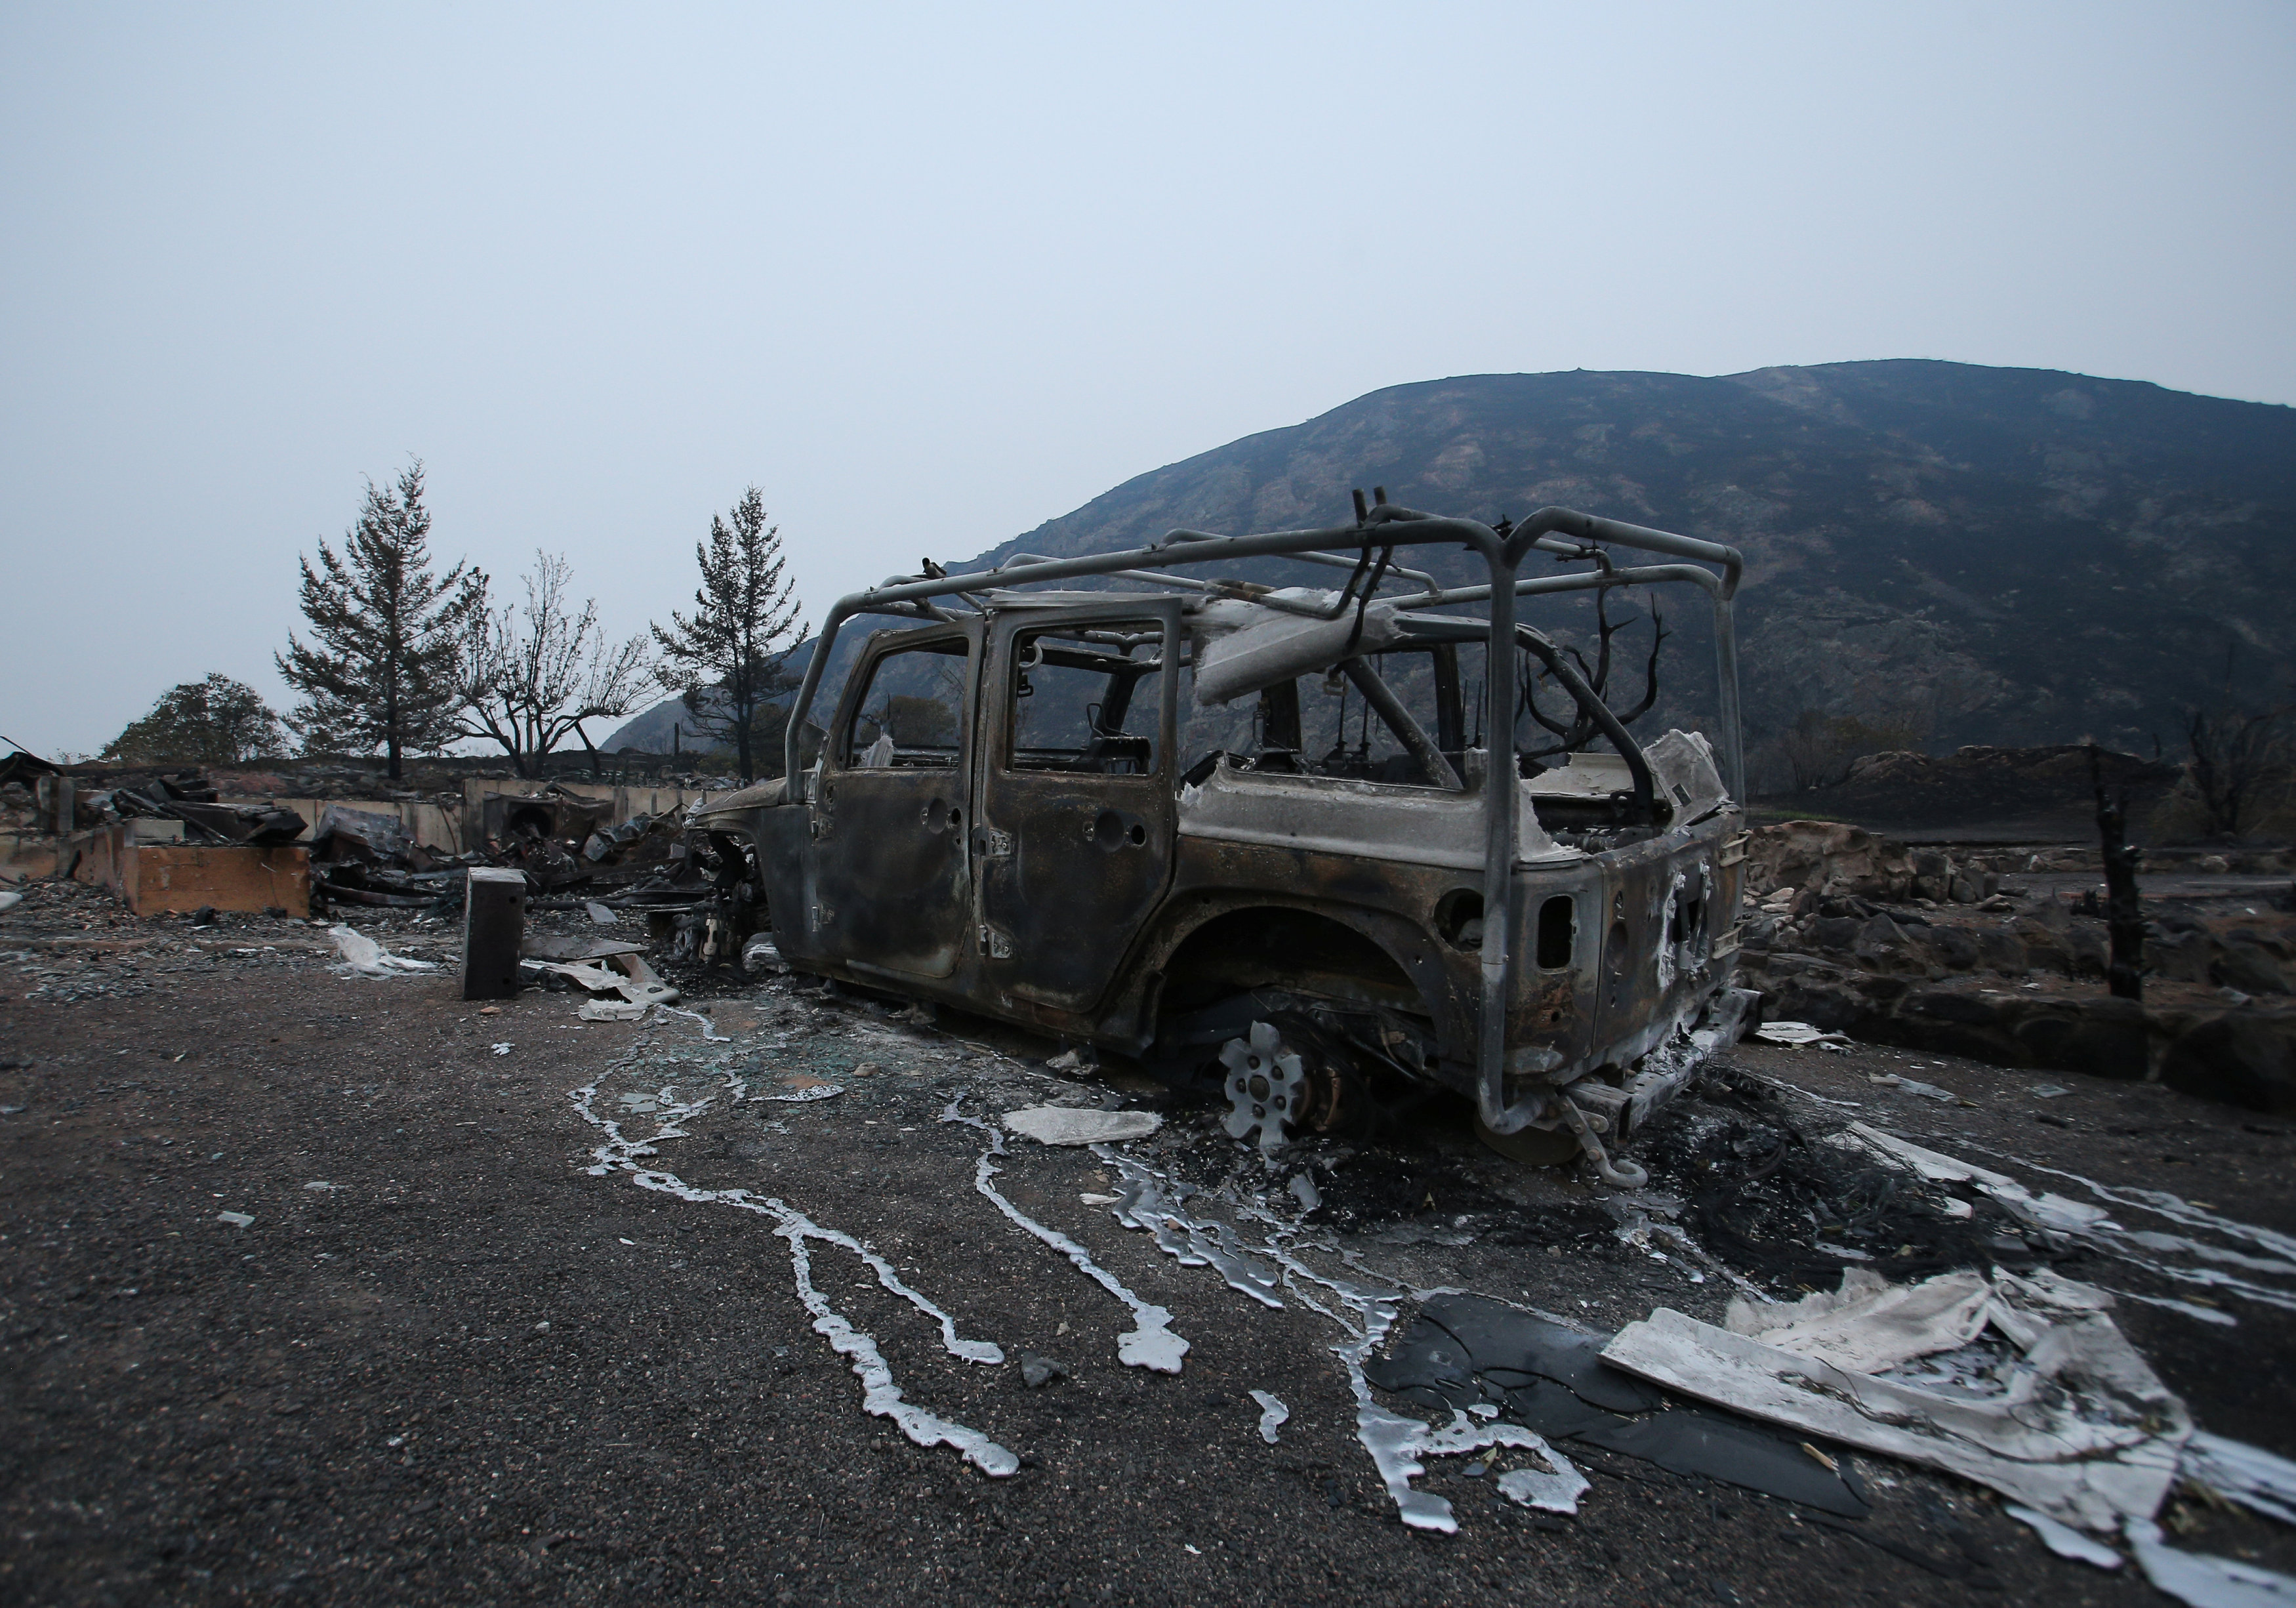 سيارة متفحمة بسبب الحرائق غرب كندا